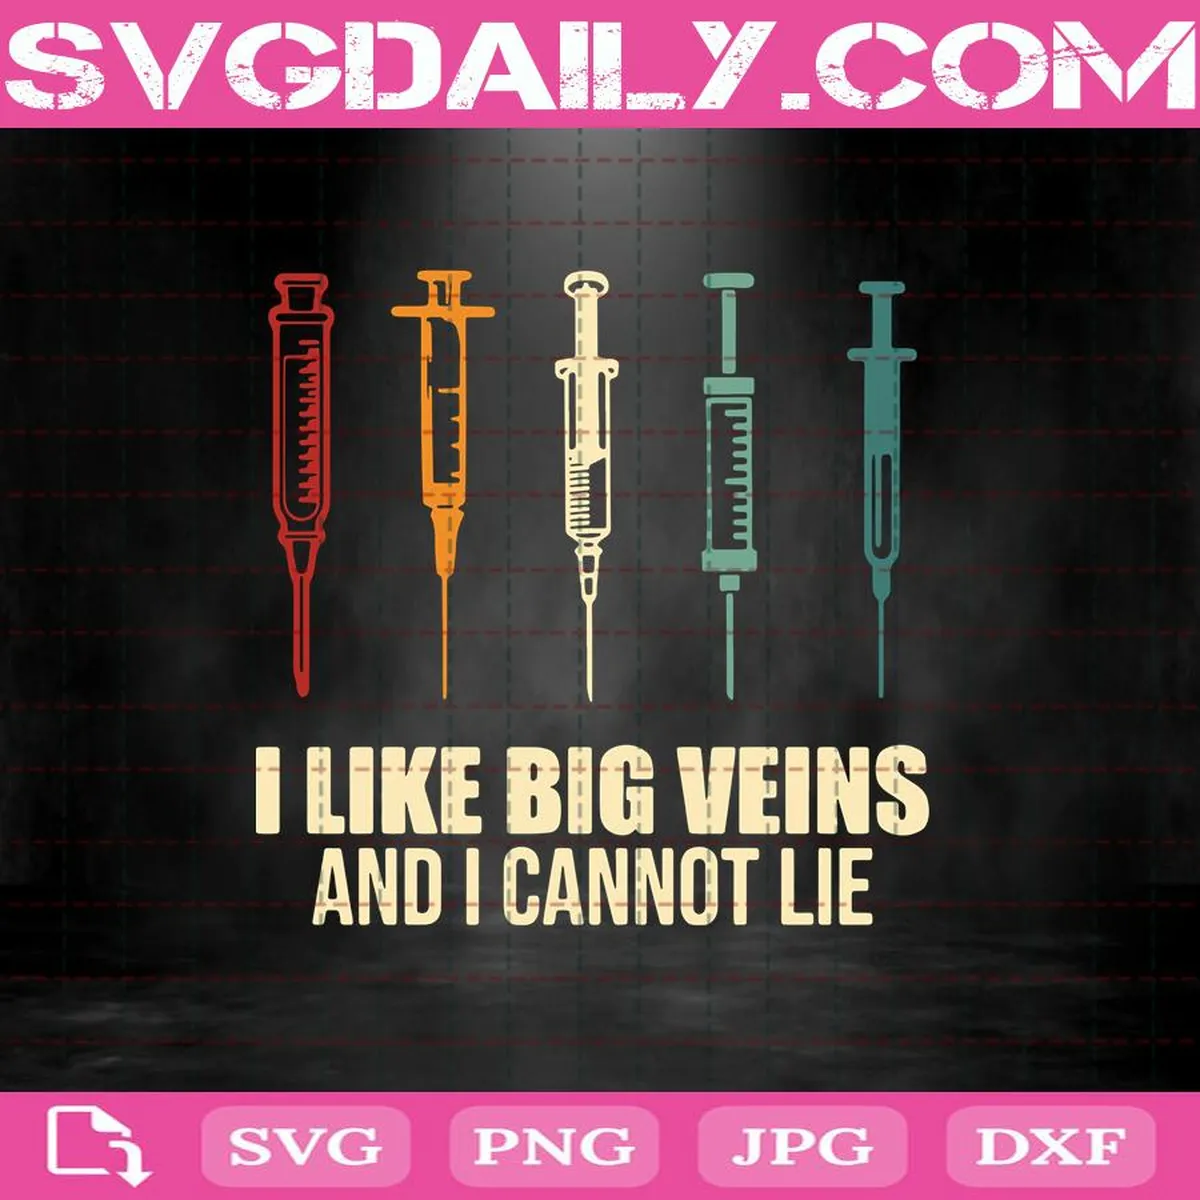 I Like Big Veins And I Cannot Lie Svg, I Like Big Veins Svg, I Cannot Lie Svg, Veins Svg, Nurse Life Svg, Nursing Svg, Nurse Svg